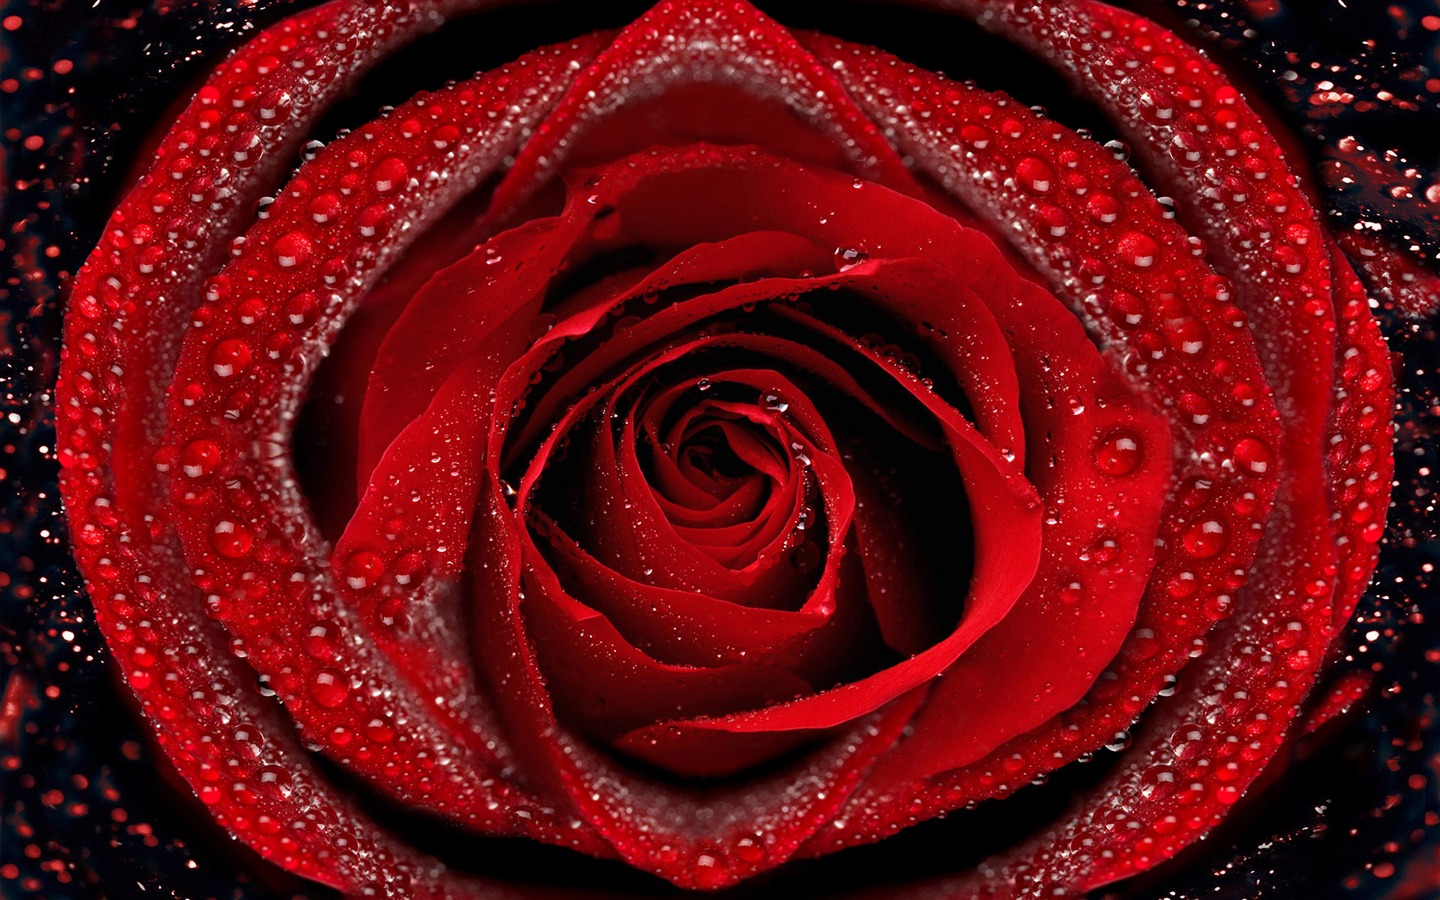 超大玫瑰写真 壁纸(六)2 - 1440x900